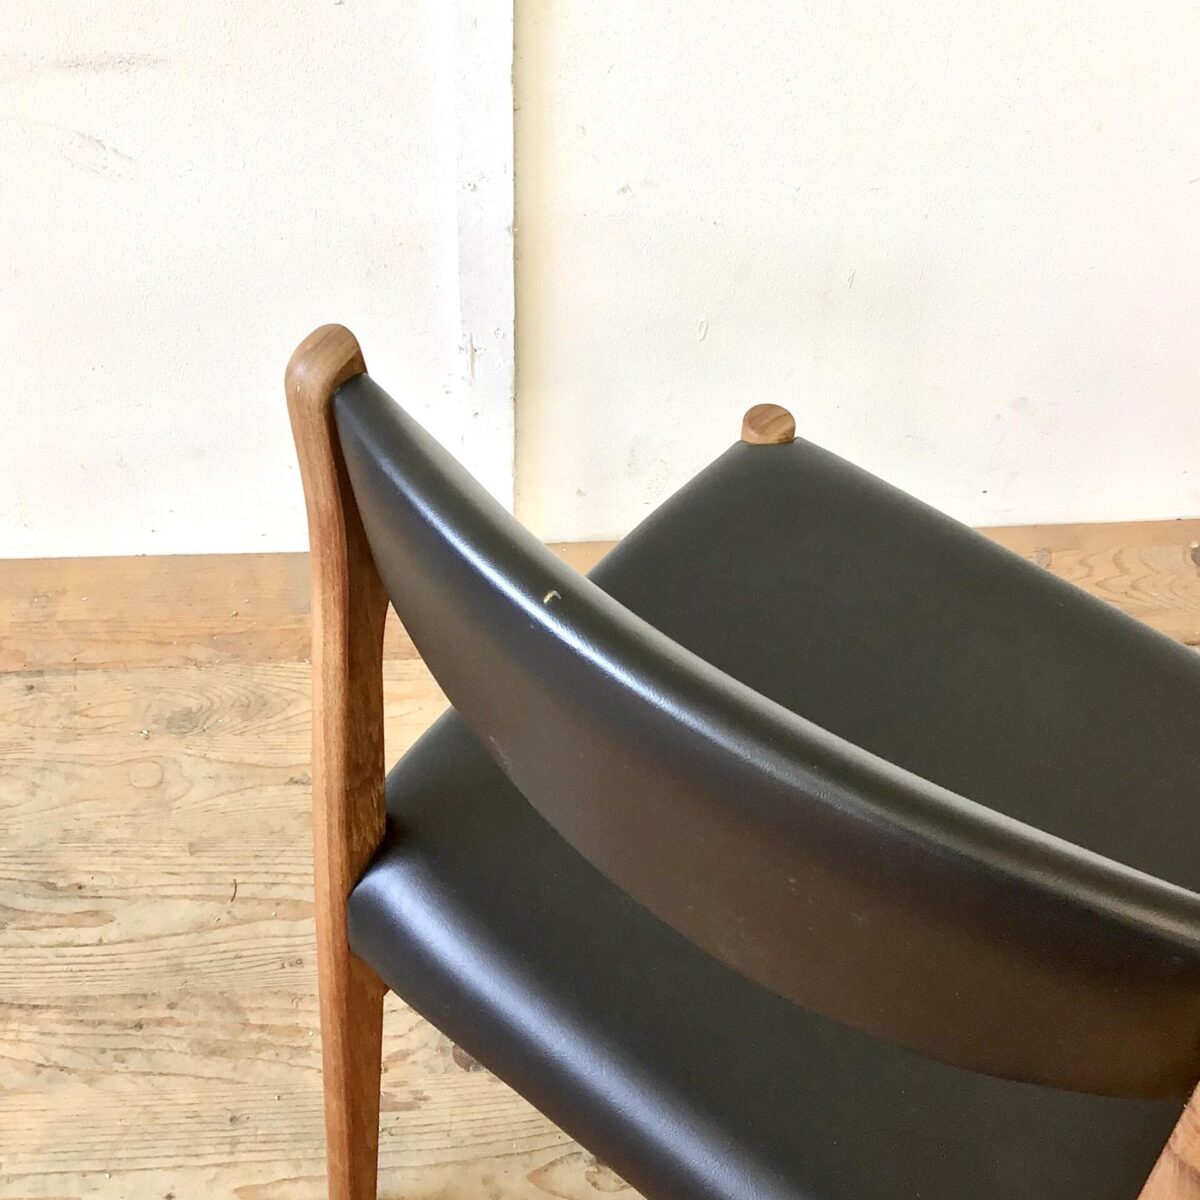 6 Midcentury Esszimmer Stühle von SAX Denmark. Stabiler guter Zustand, Lehne und Sitzfläche schwarzes Kunstleder oder Vinyl. Zwei haben kleinere Risse beim Bezug an der Lehne. Ist auf den Fotos ersichtlich. 